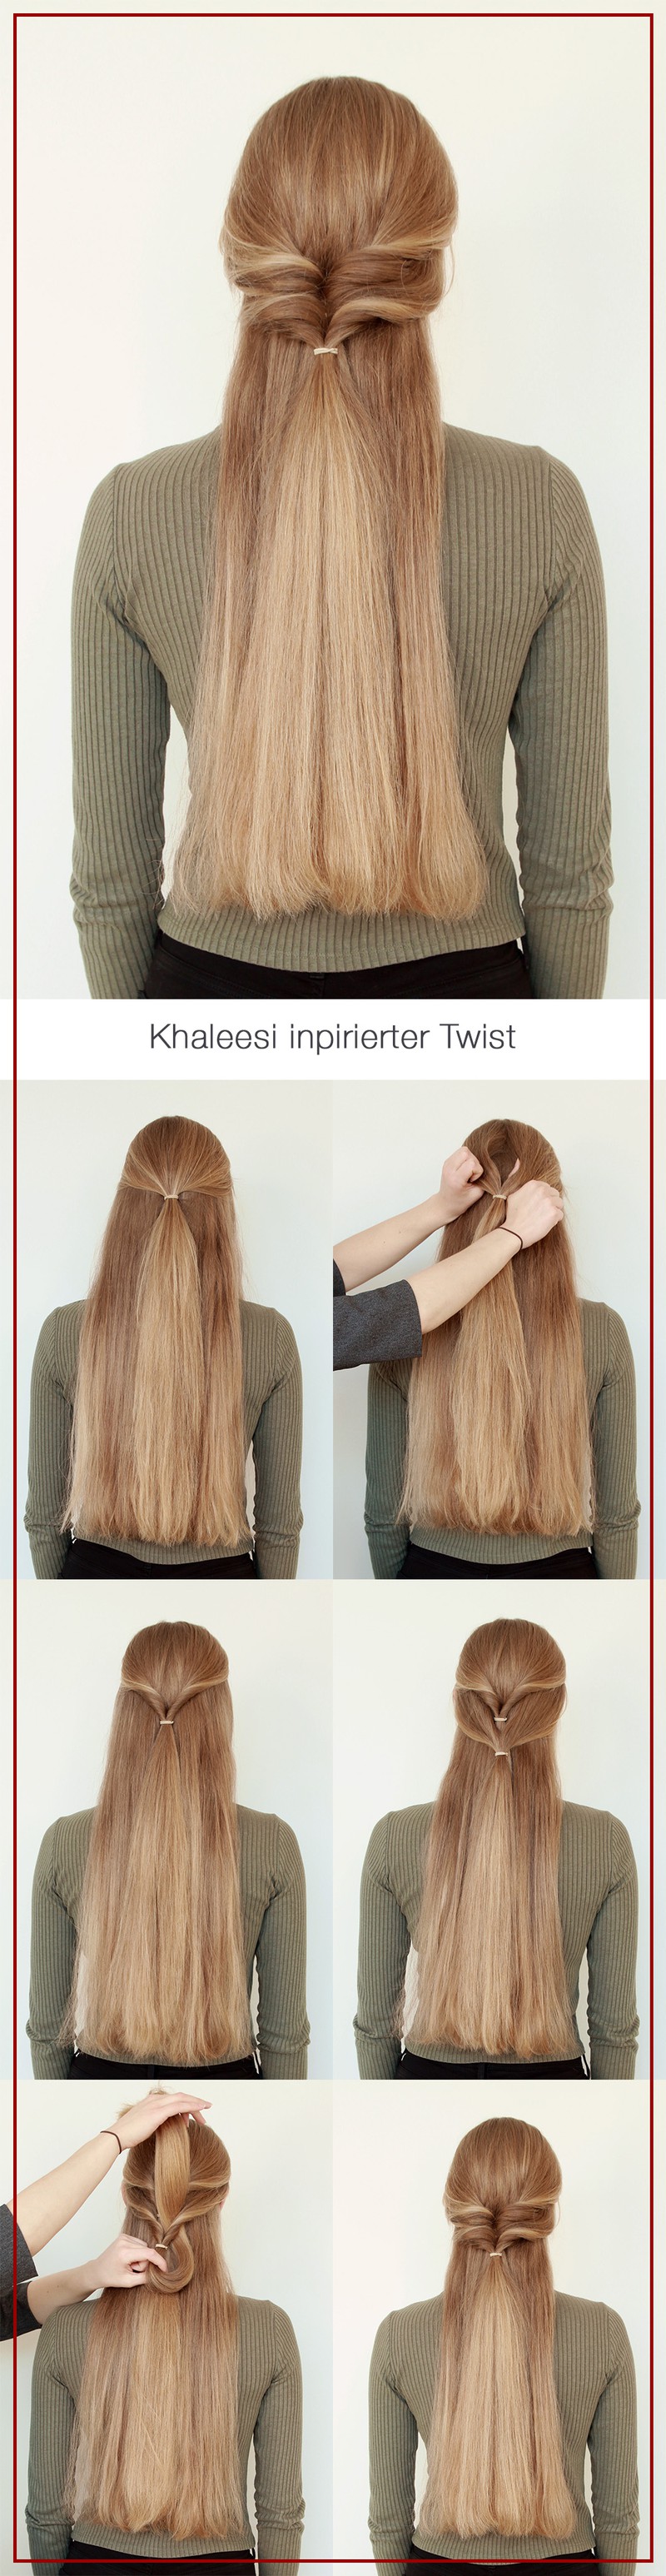 Khaleesi inspirierter Twist: Diese coole Frisur schaffst du in unter 5 Minuten